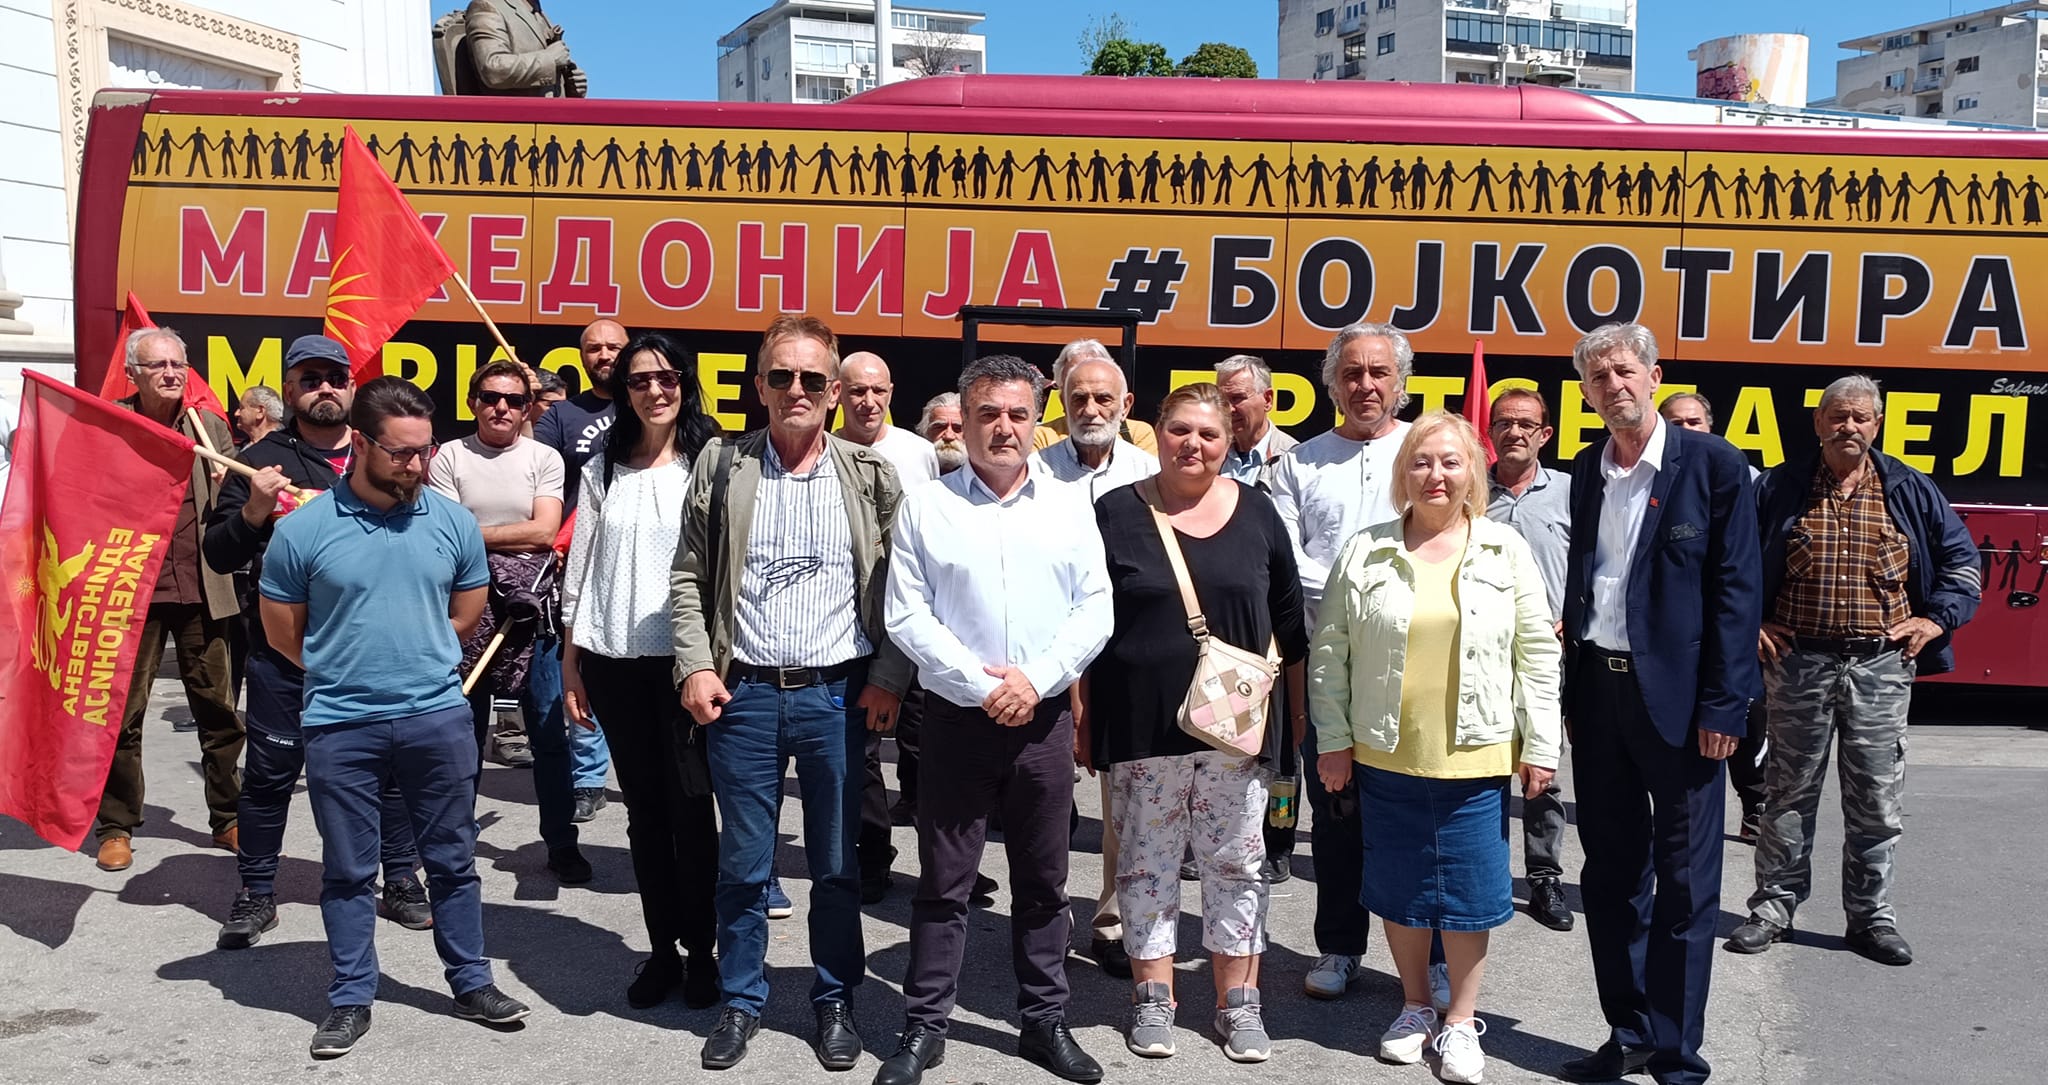 Националниот Блок „Македонија - Бојкотира марионета за претседател“ ја почна кампањата за бојкот на претседателските избори 